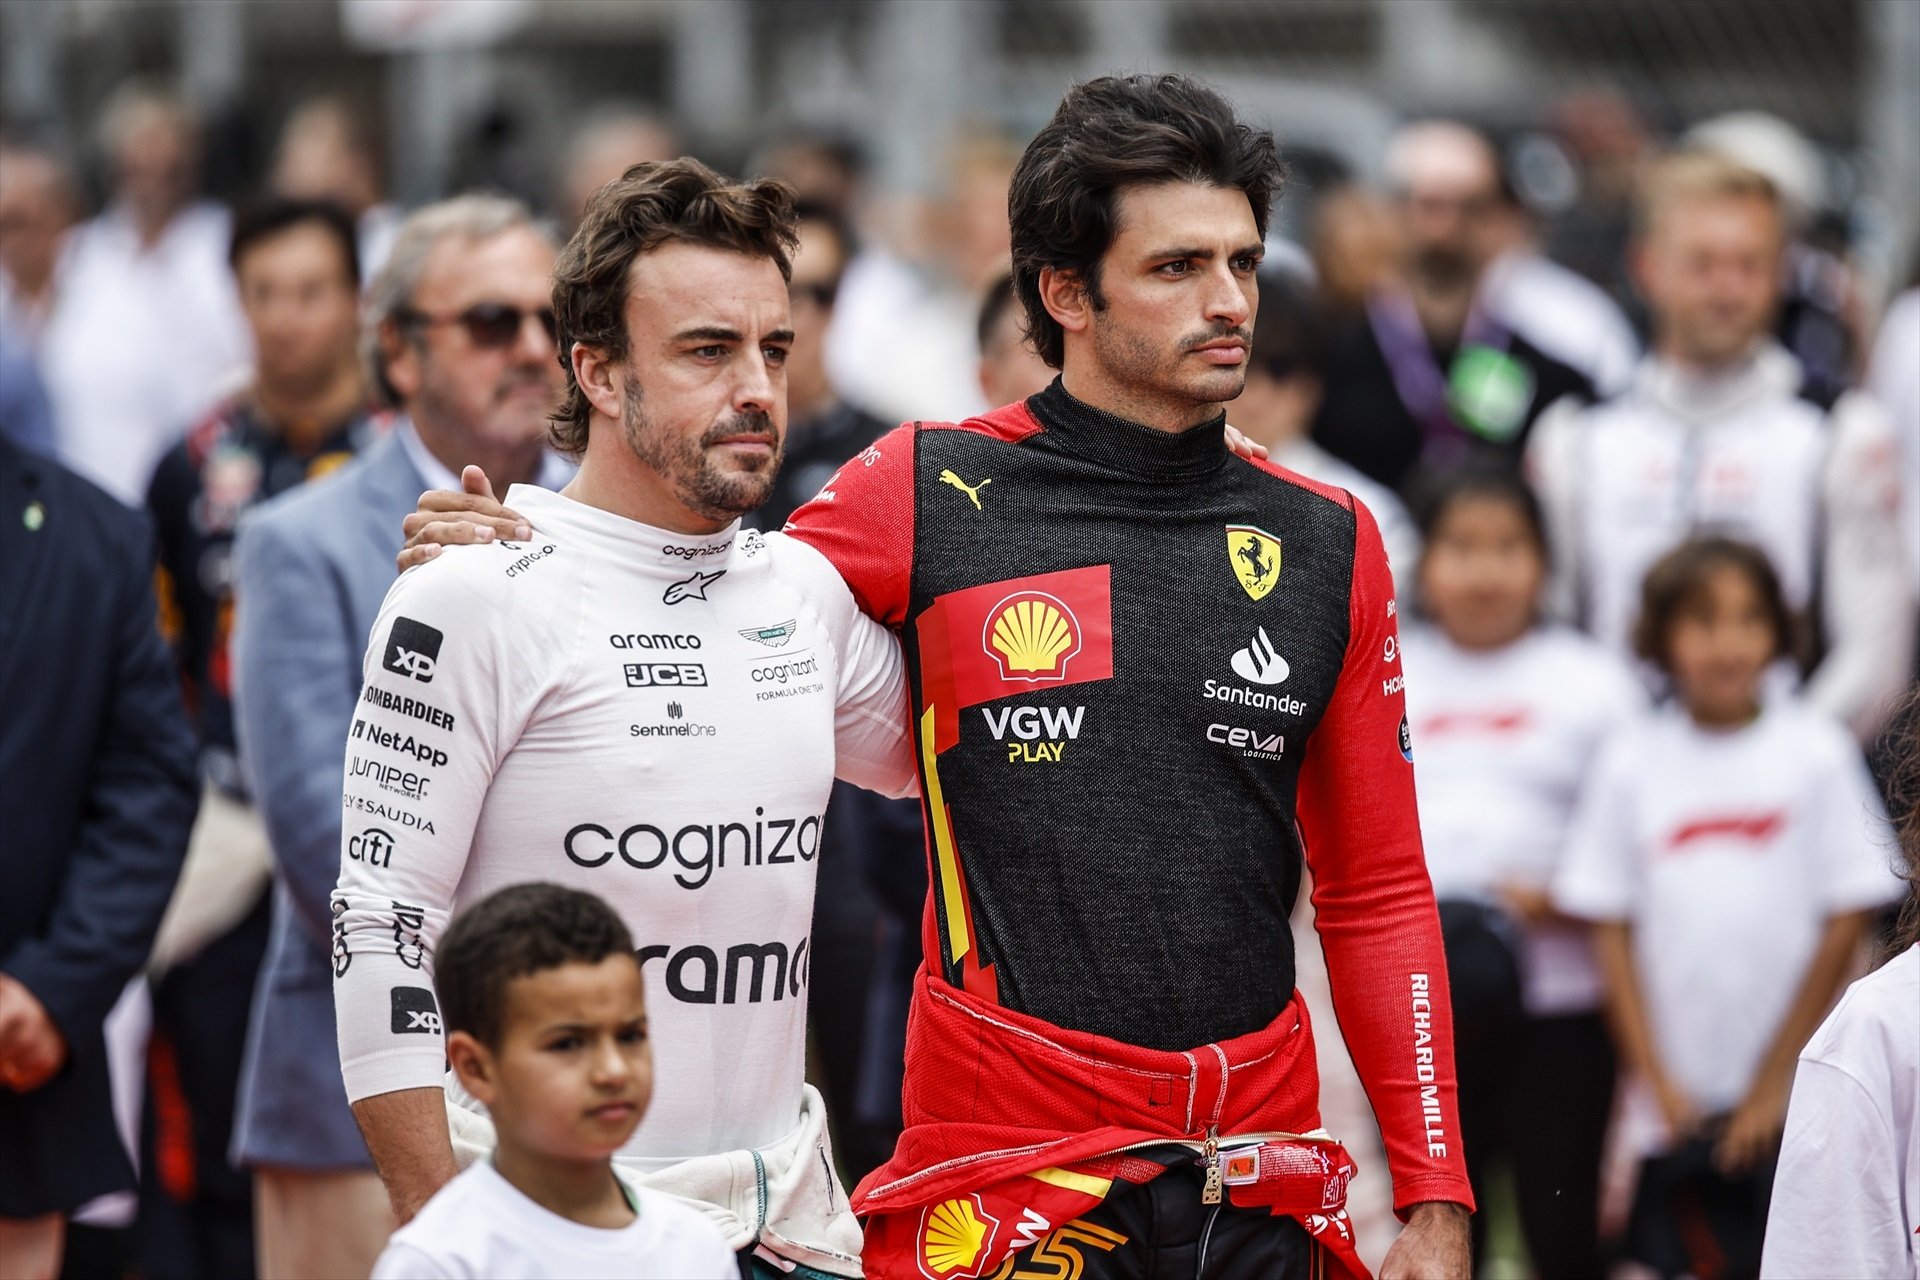 Por detrás de Max Verstappen no está Fernando Alonso ni Sainz, la estrella que quiere Ferrari y Aston Martin